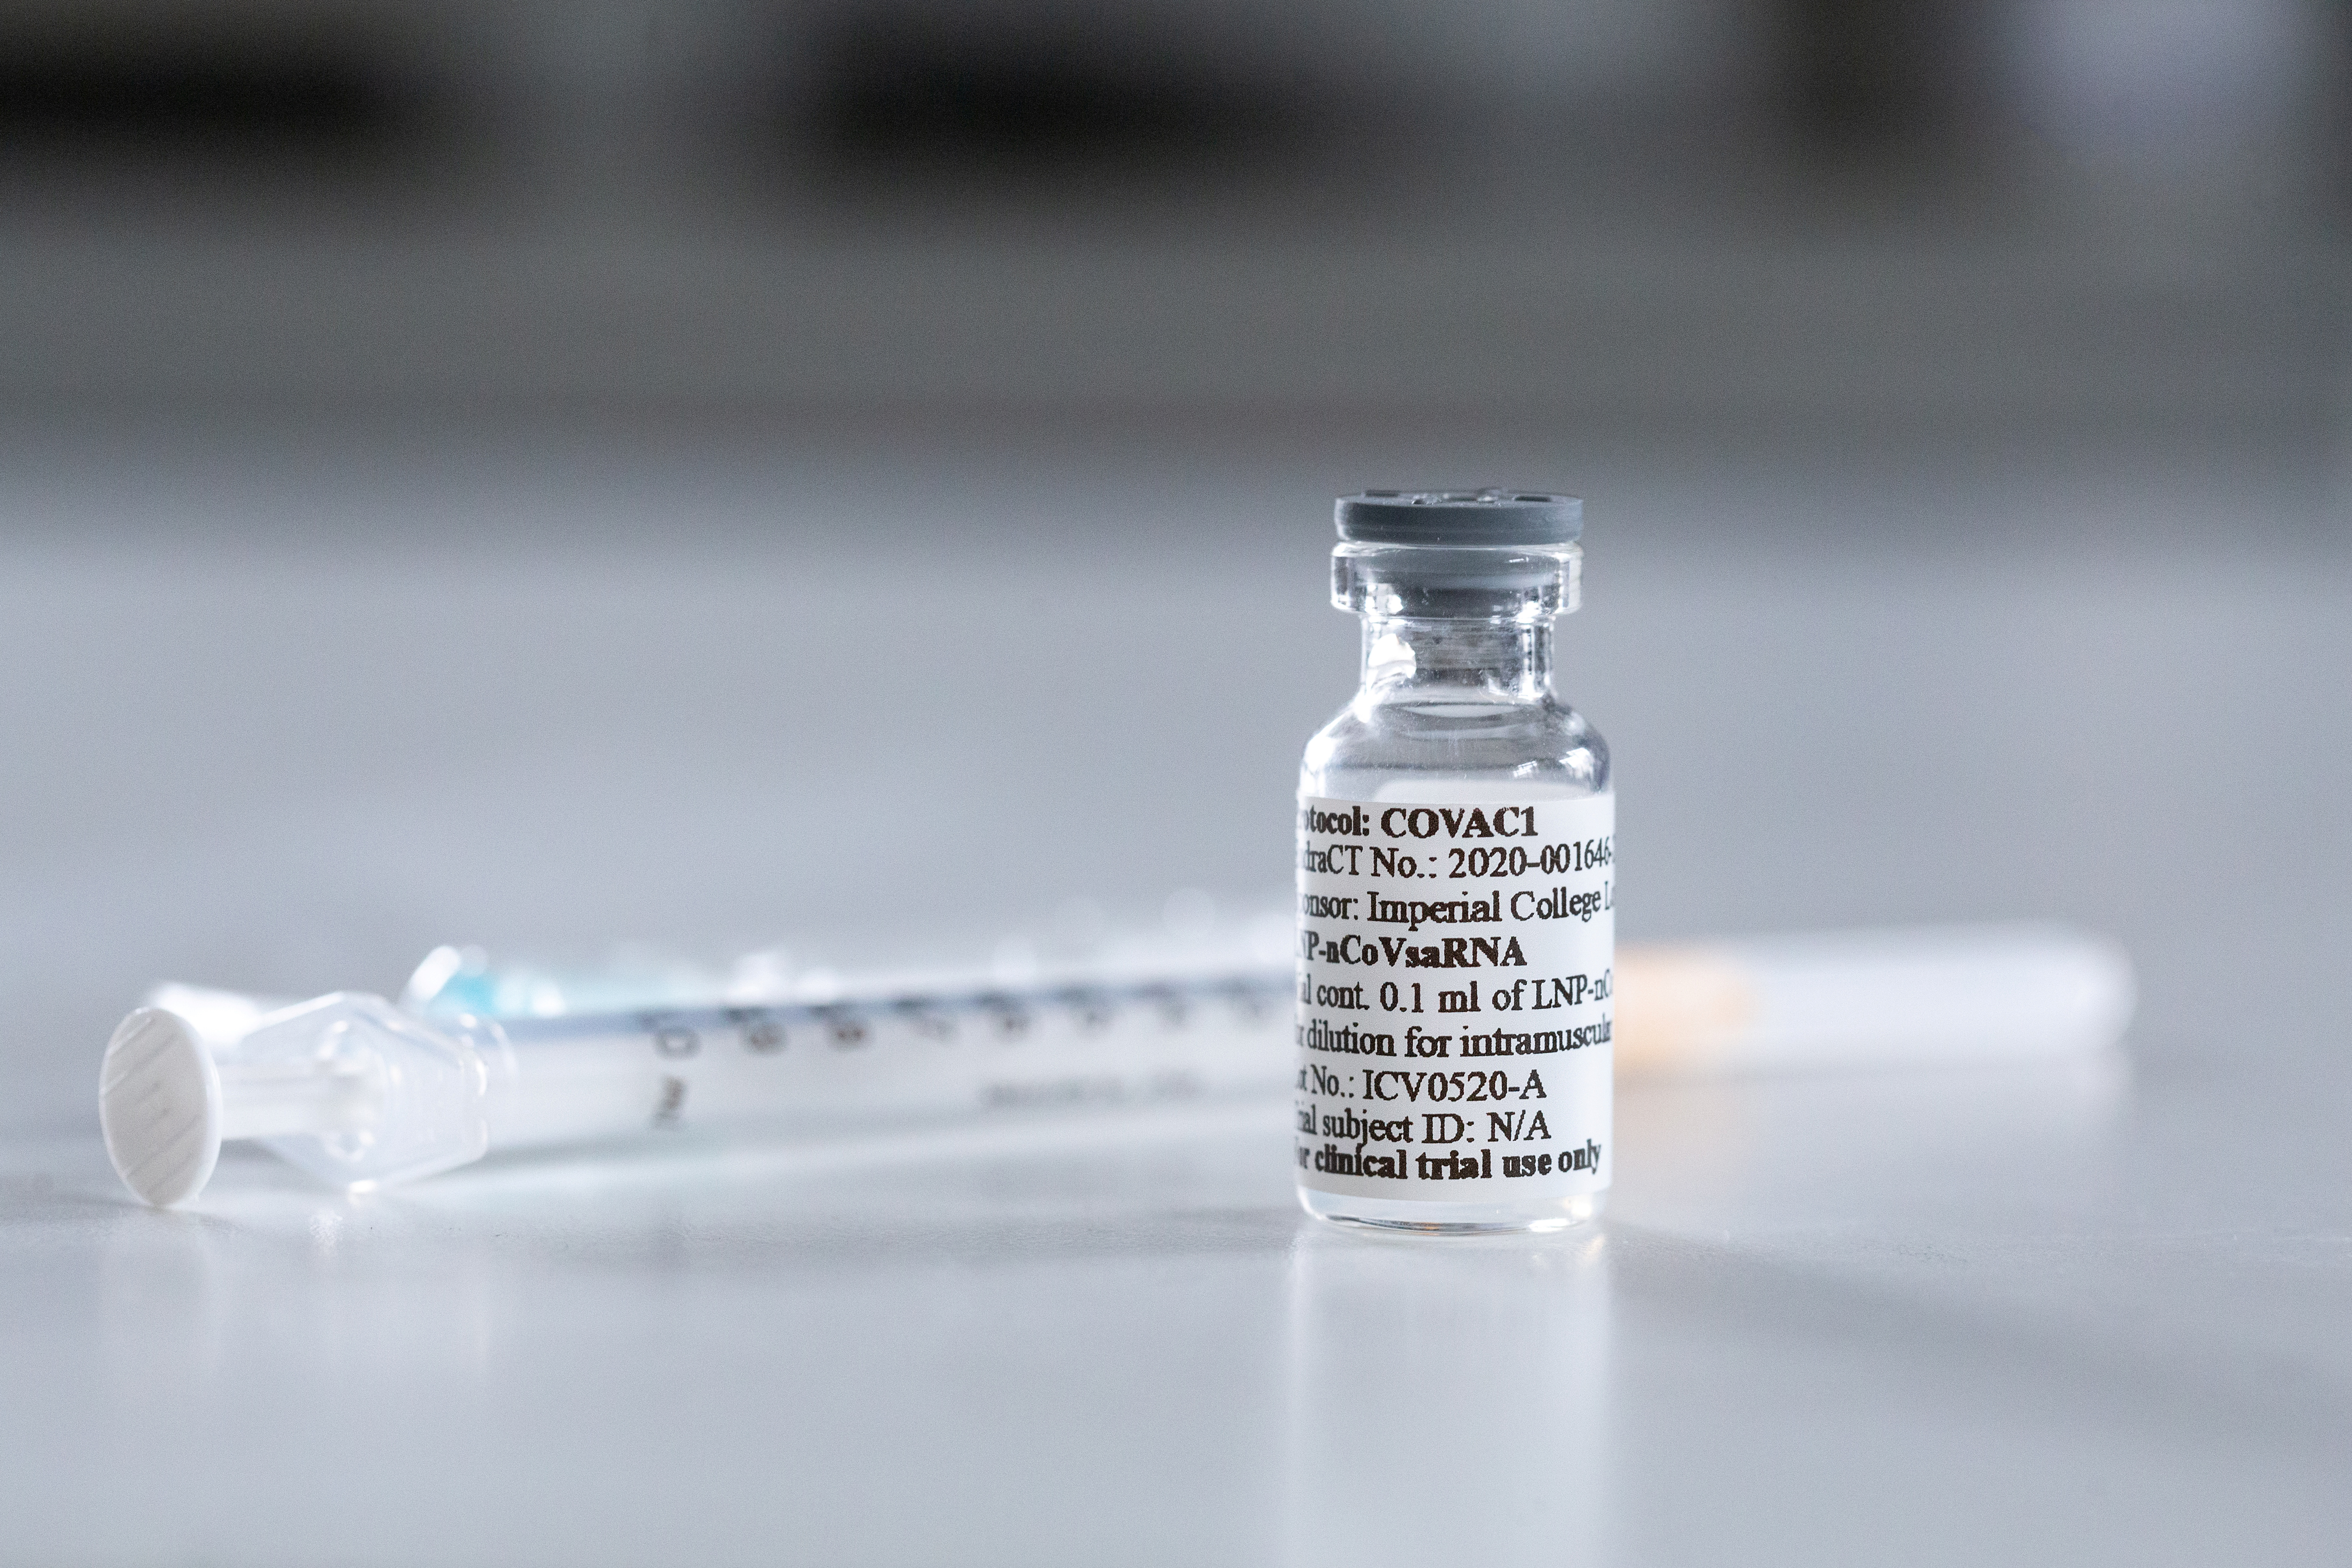 Un vial con una posible vacuna para la enfermedad del coronavirus (COVID-19) se muestra en el Imperial College London, Londres, Gran Bretaña en una fotografía tomada el 10 de junio de 2020. (Imperial College London/Thomas Angus vía REUTERS)